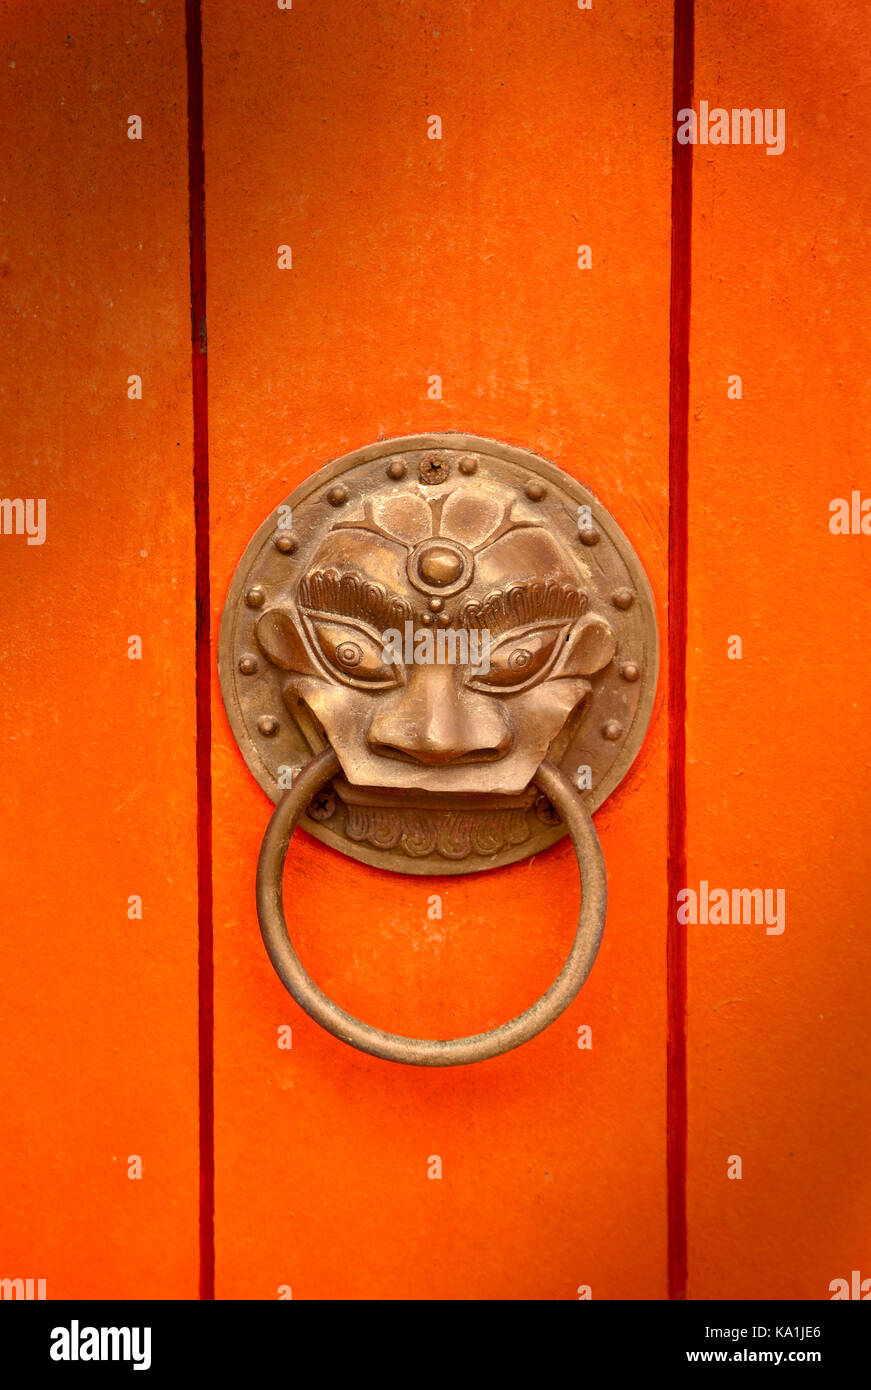 Oriental brass door handle, gold finish orange door Stock Photo